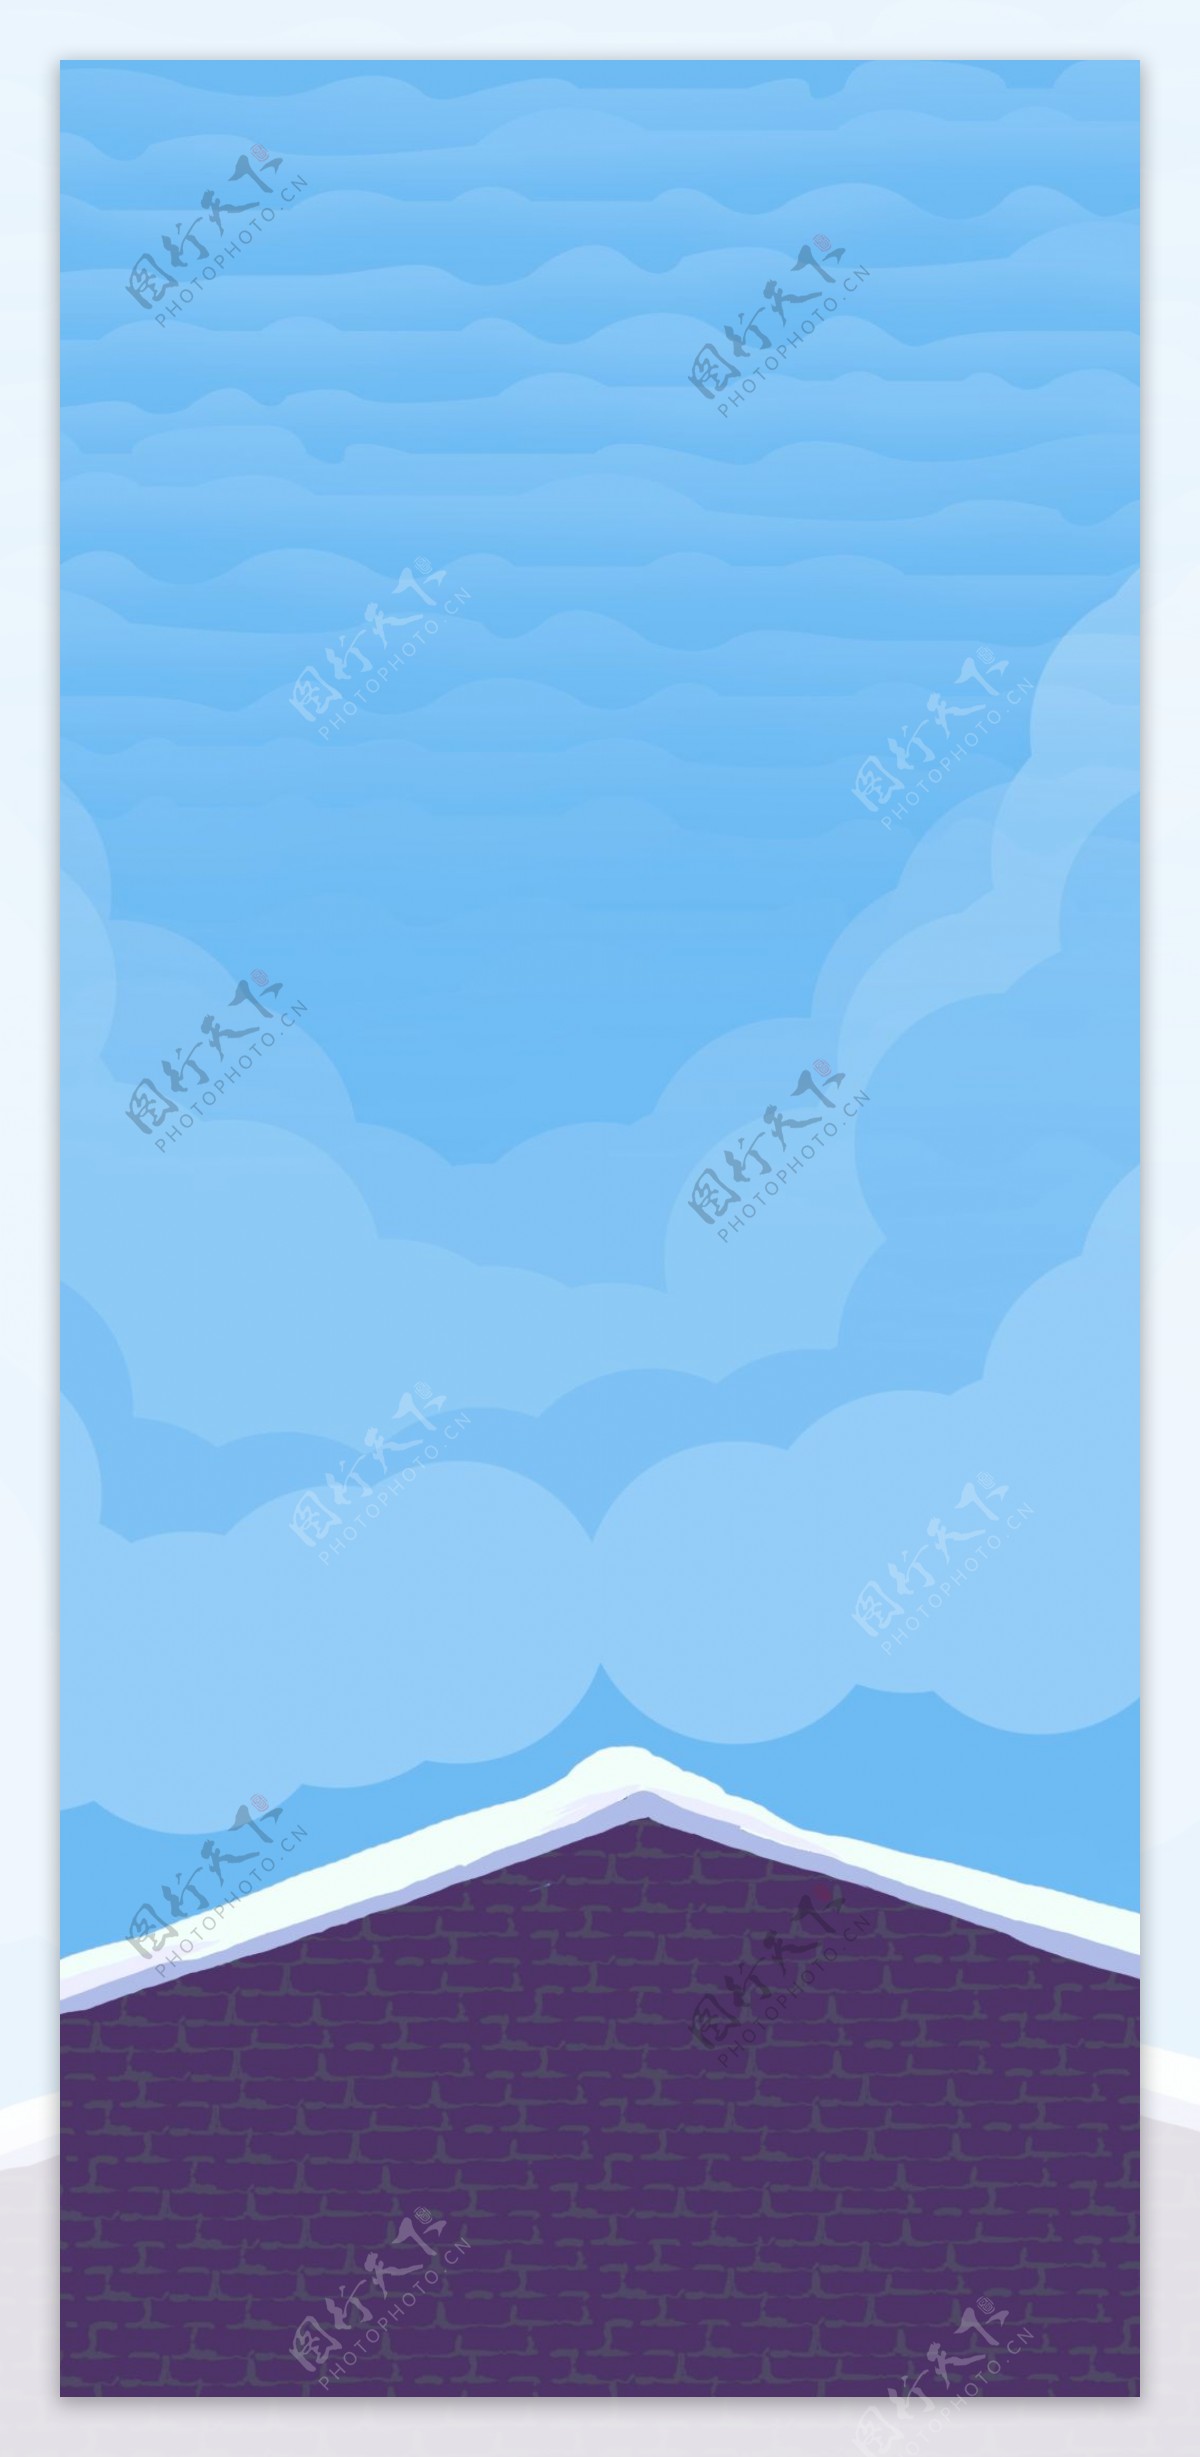 卡通手绘蓝天白云下的房檐插画背景